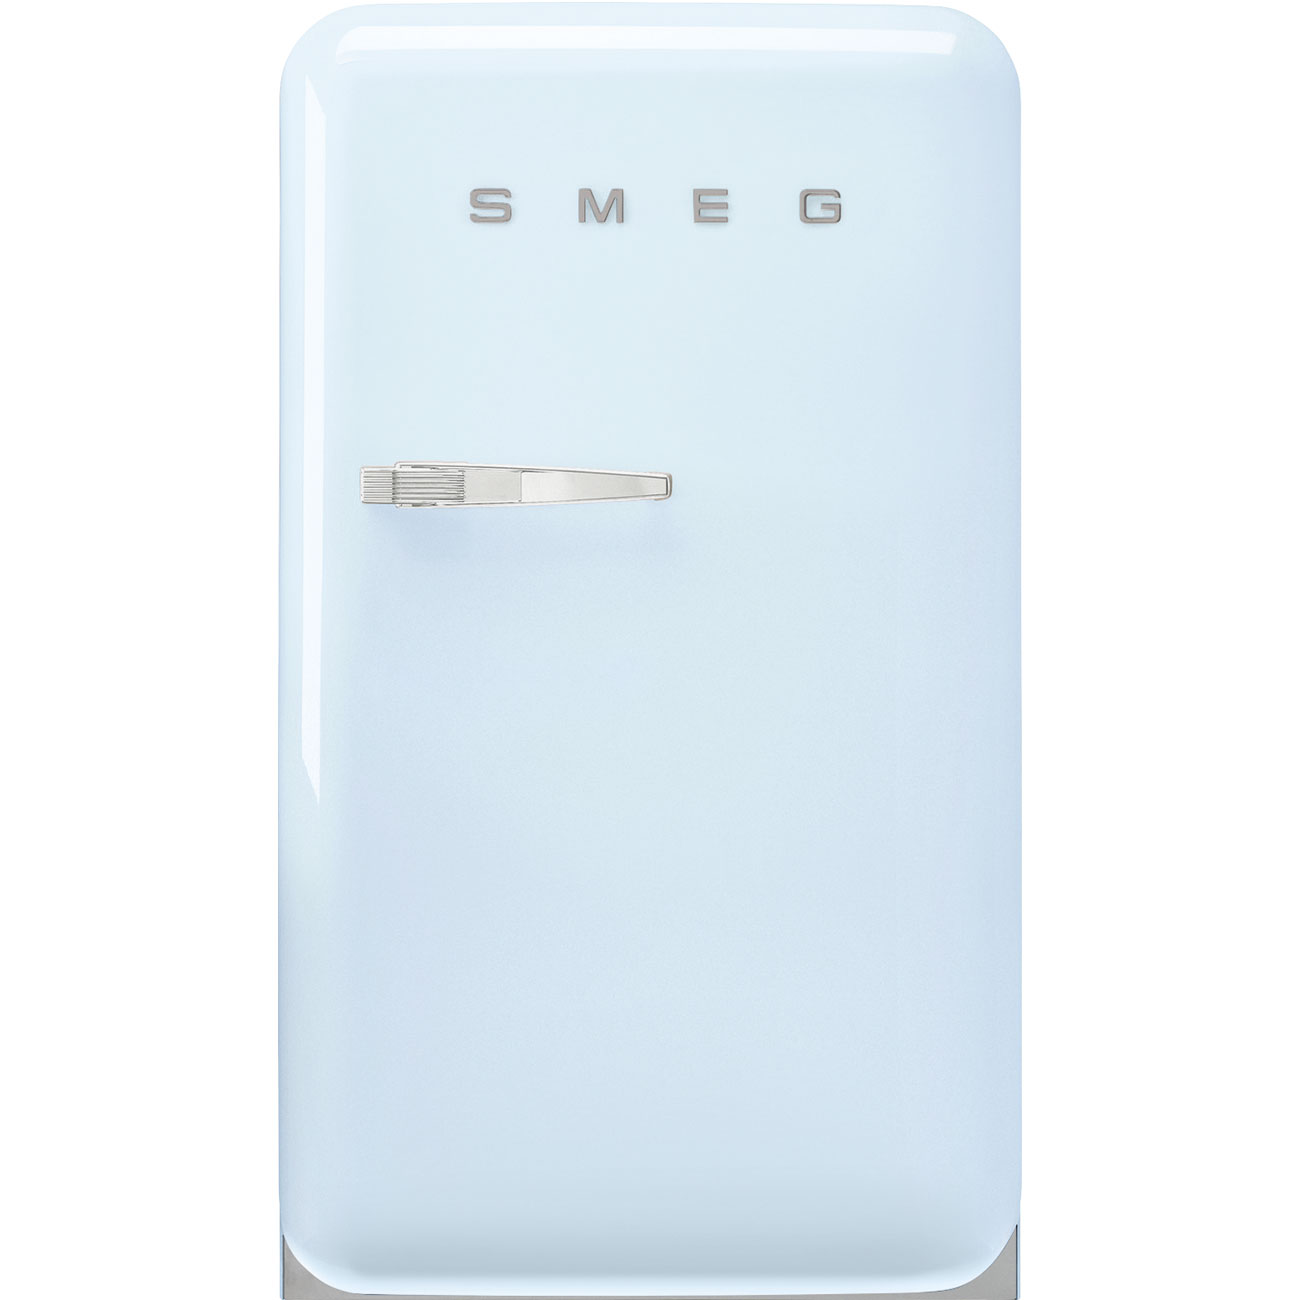 Pastel blue refrigerator - Smeg_1